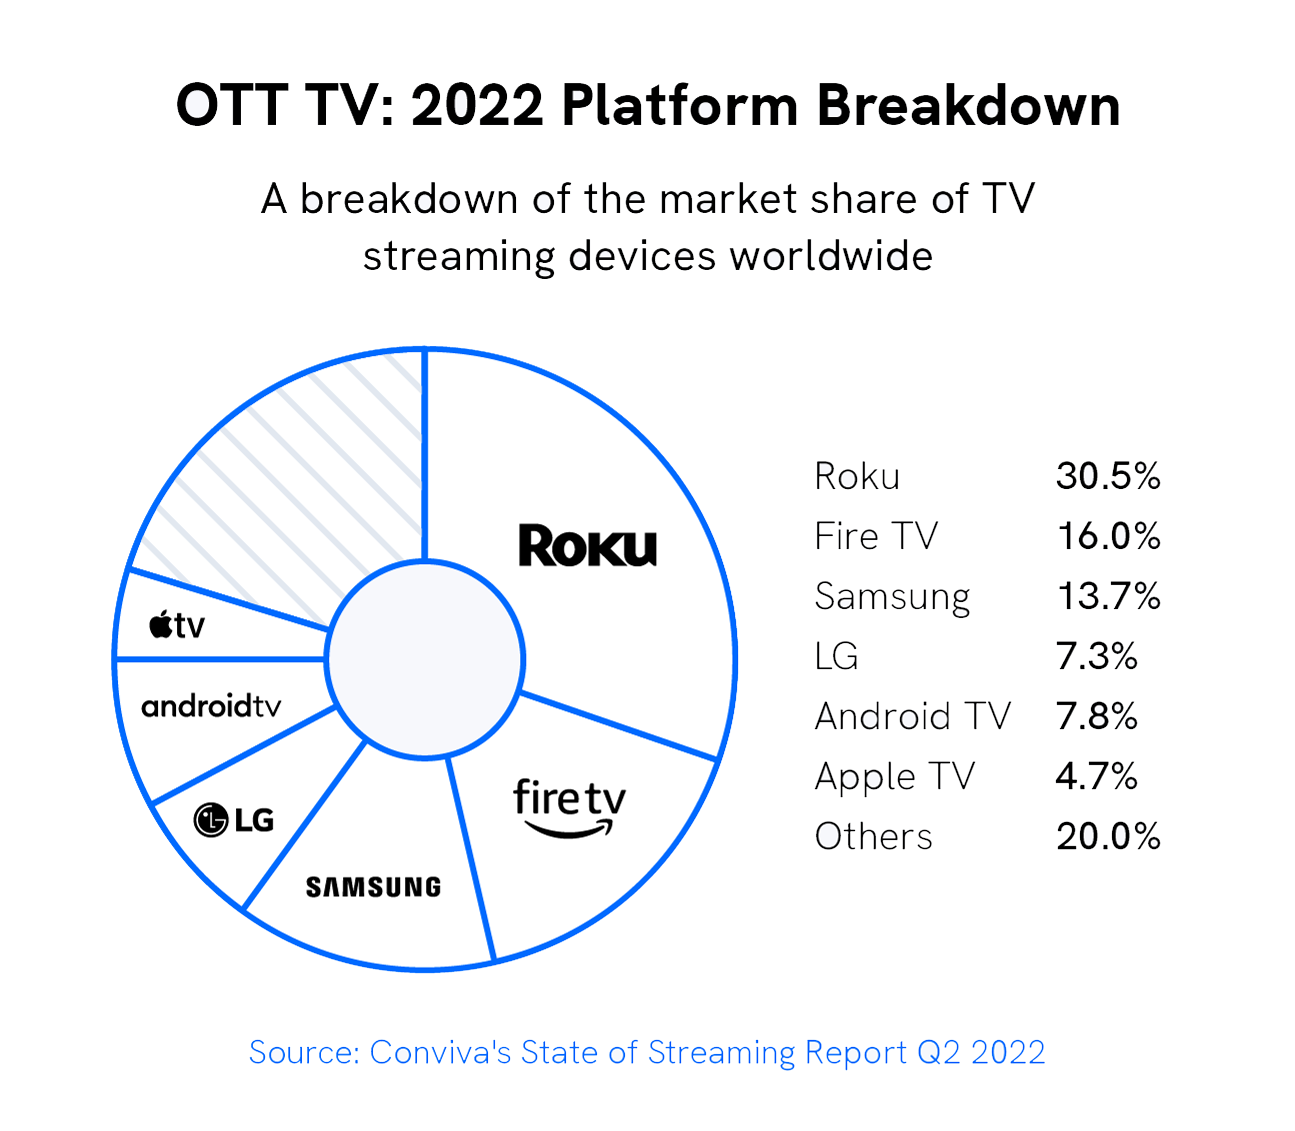 ott-tv-platform-breakdown img